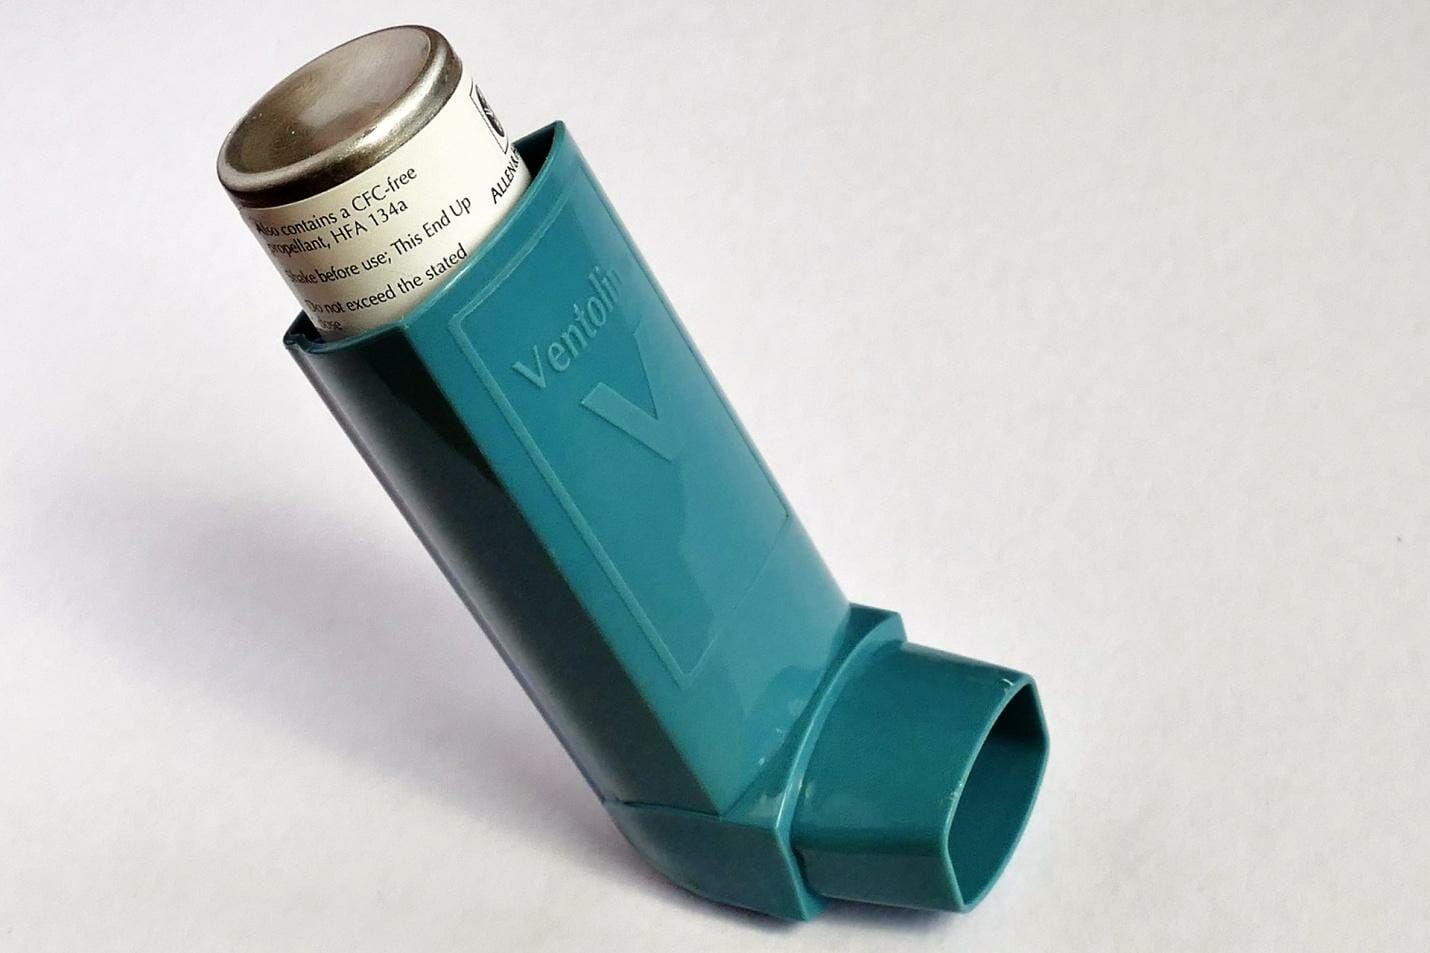 asthma attack prep